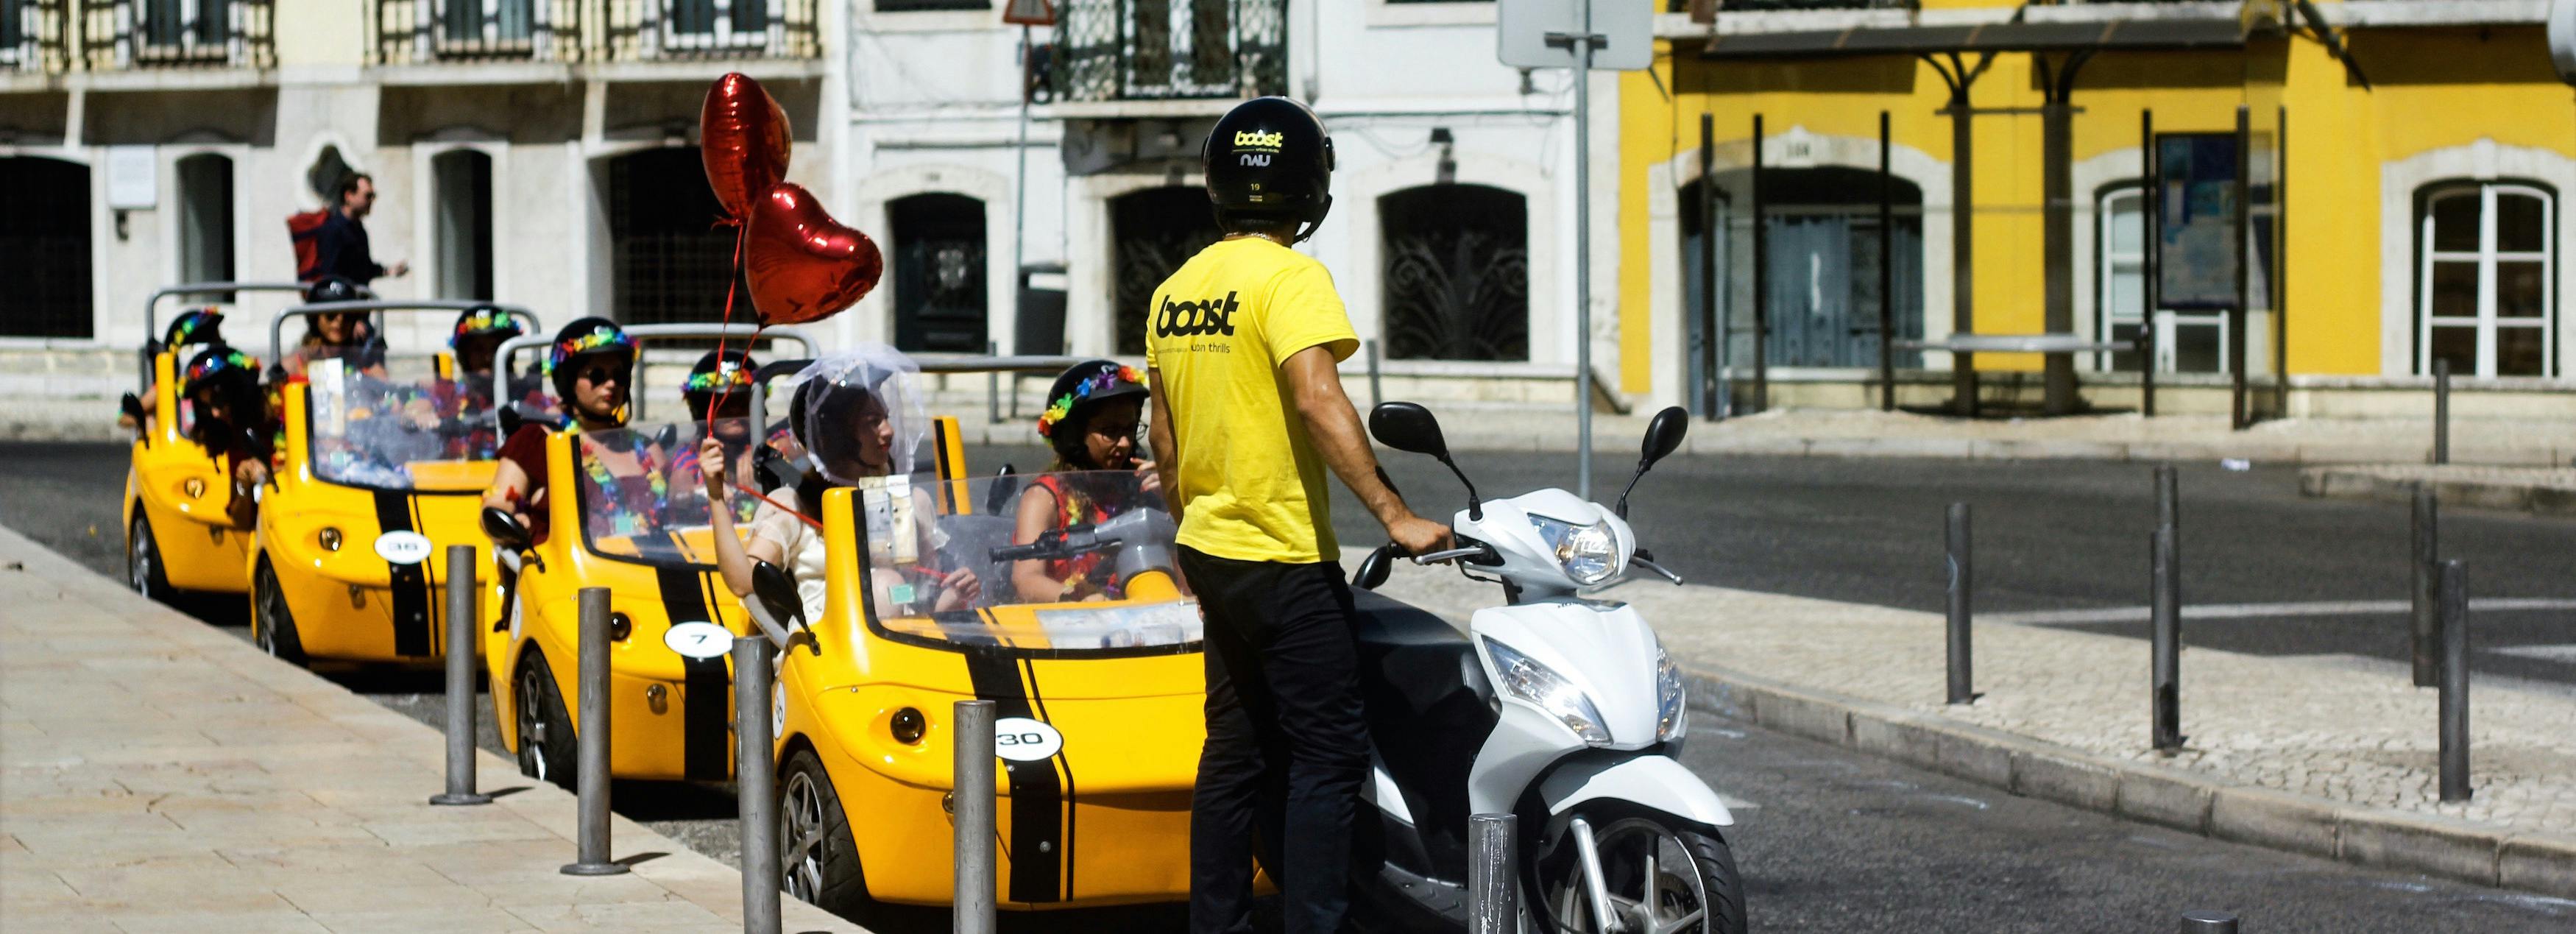 Wycieczki GoCar w Lizbonie